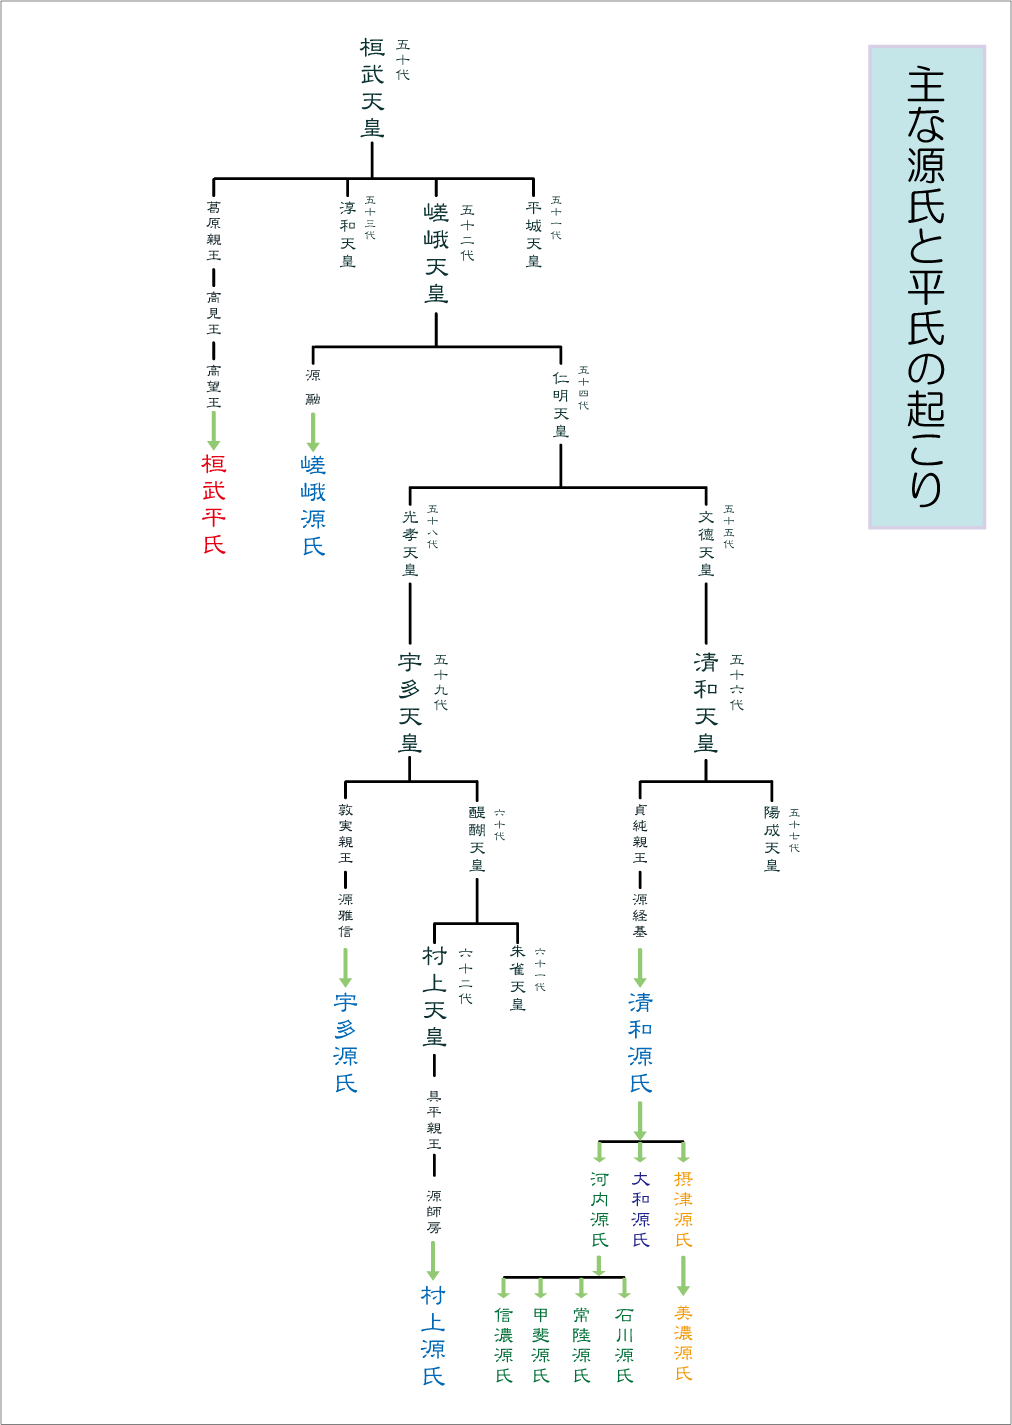 ユニーク 清和 源氏 家 系図 100+イラスト